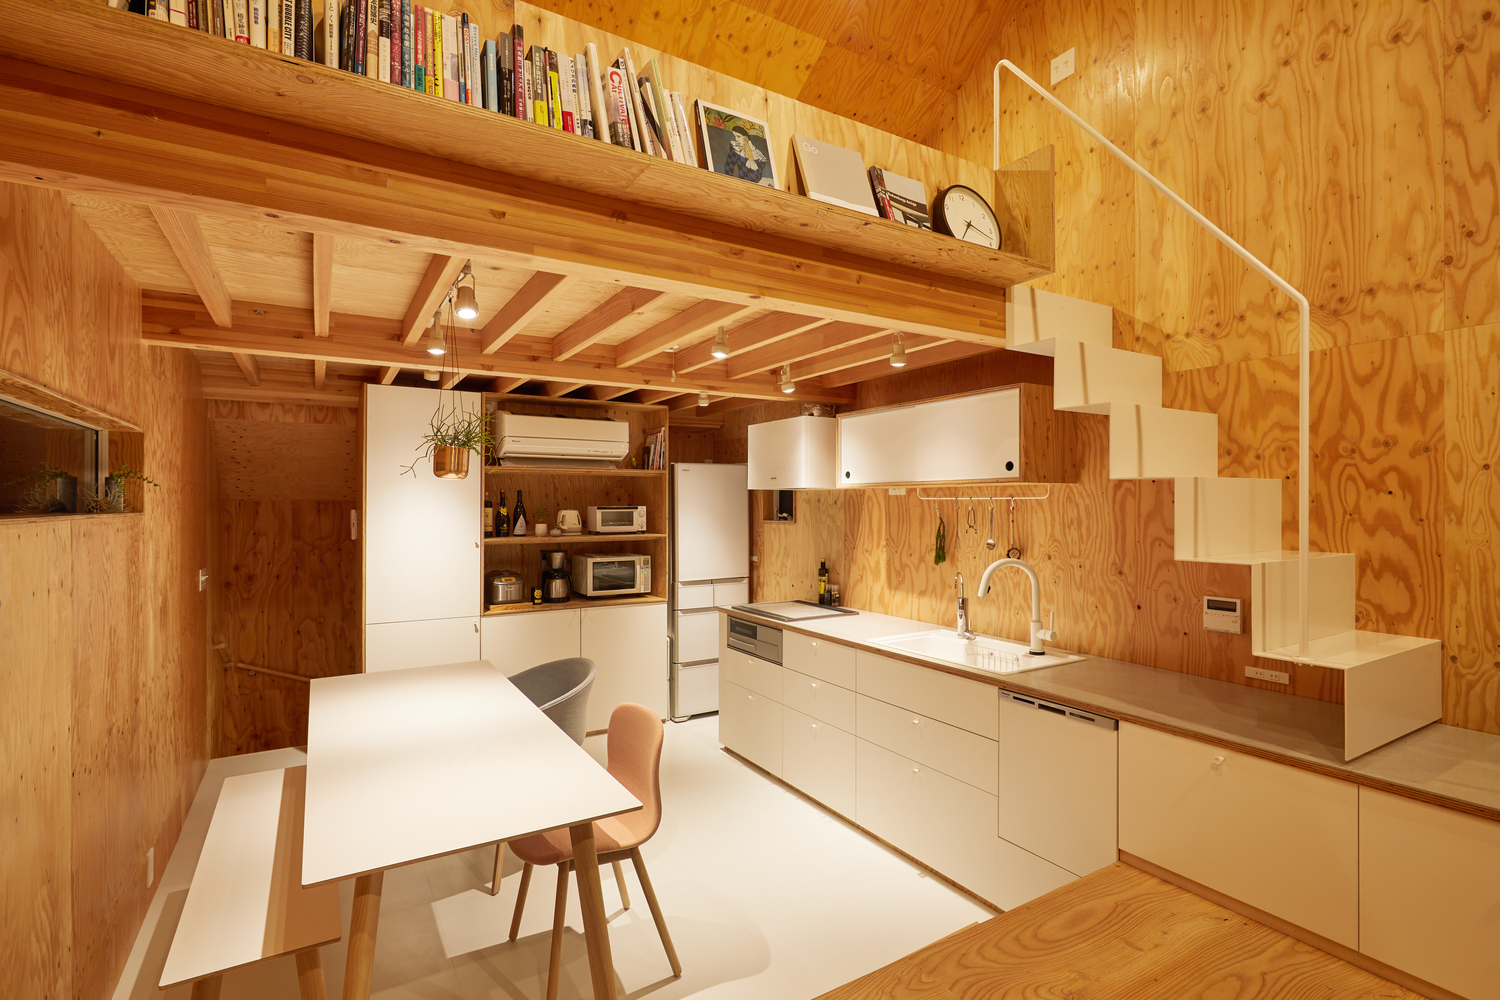 Hình ảnh phòng bếp với tủ kệ lưu trữ và bàn ăn sơn trắng, cạnh đó là cầu thang dẫn lên gác xép